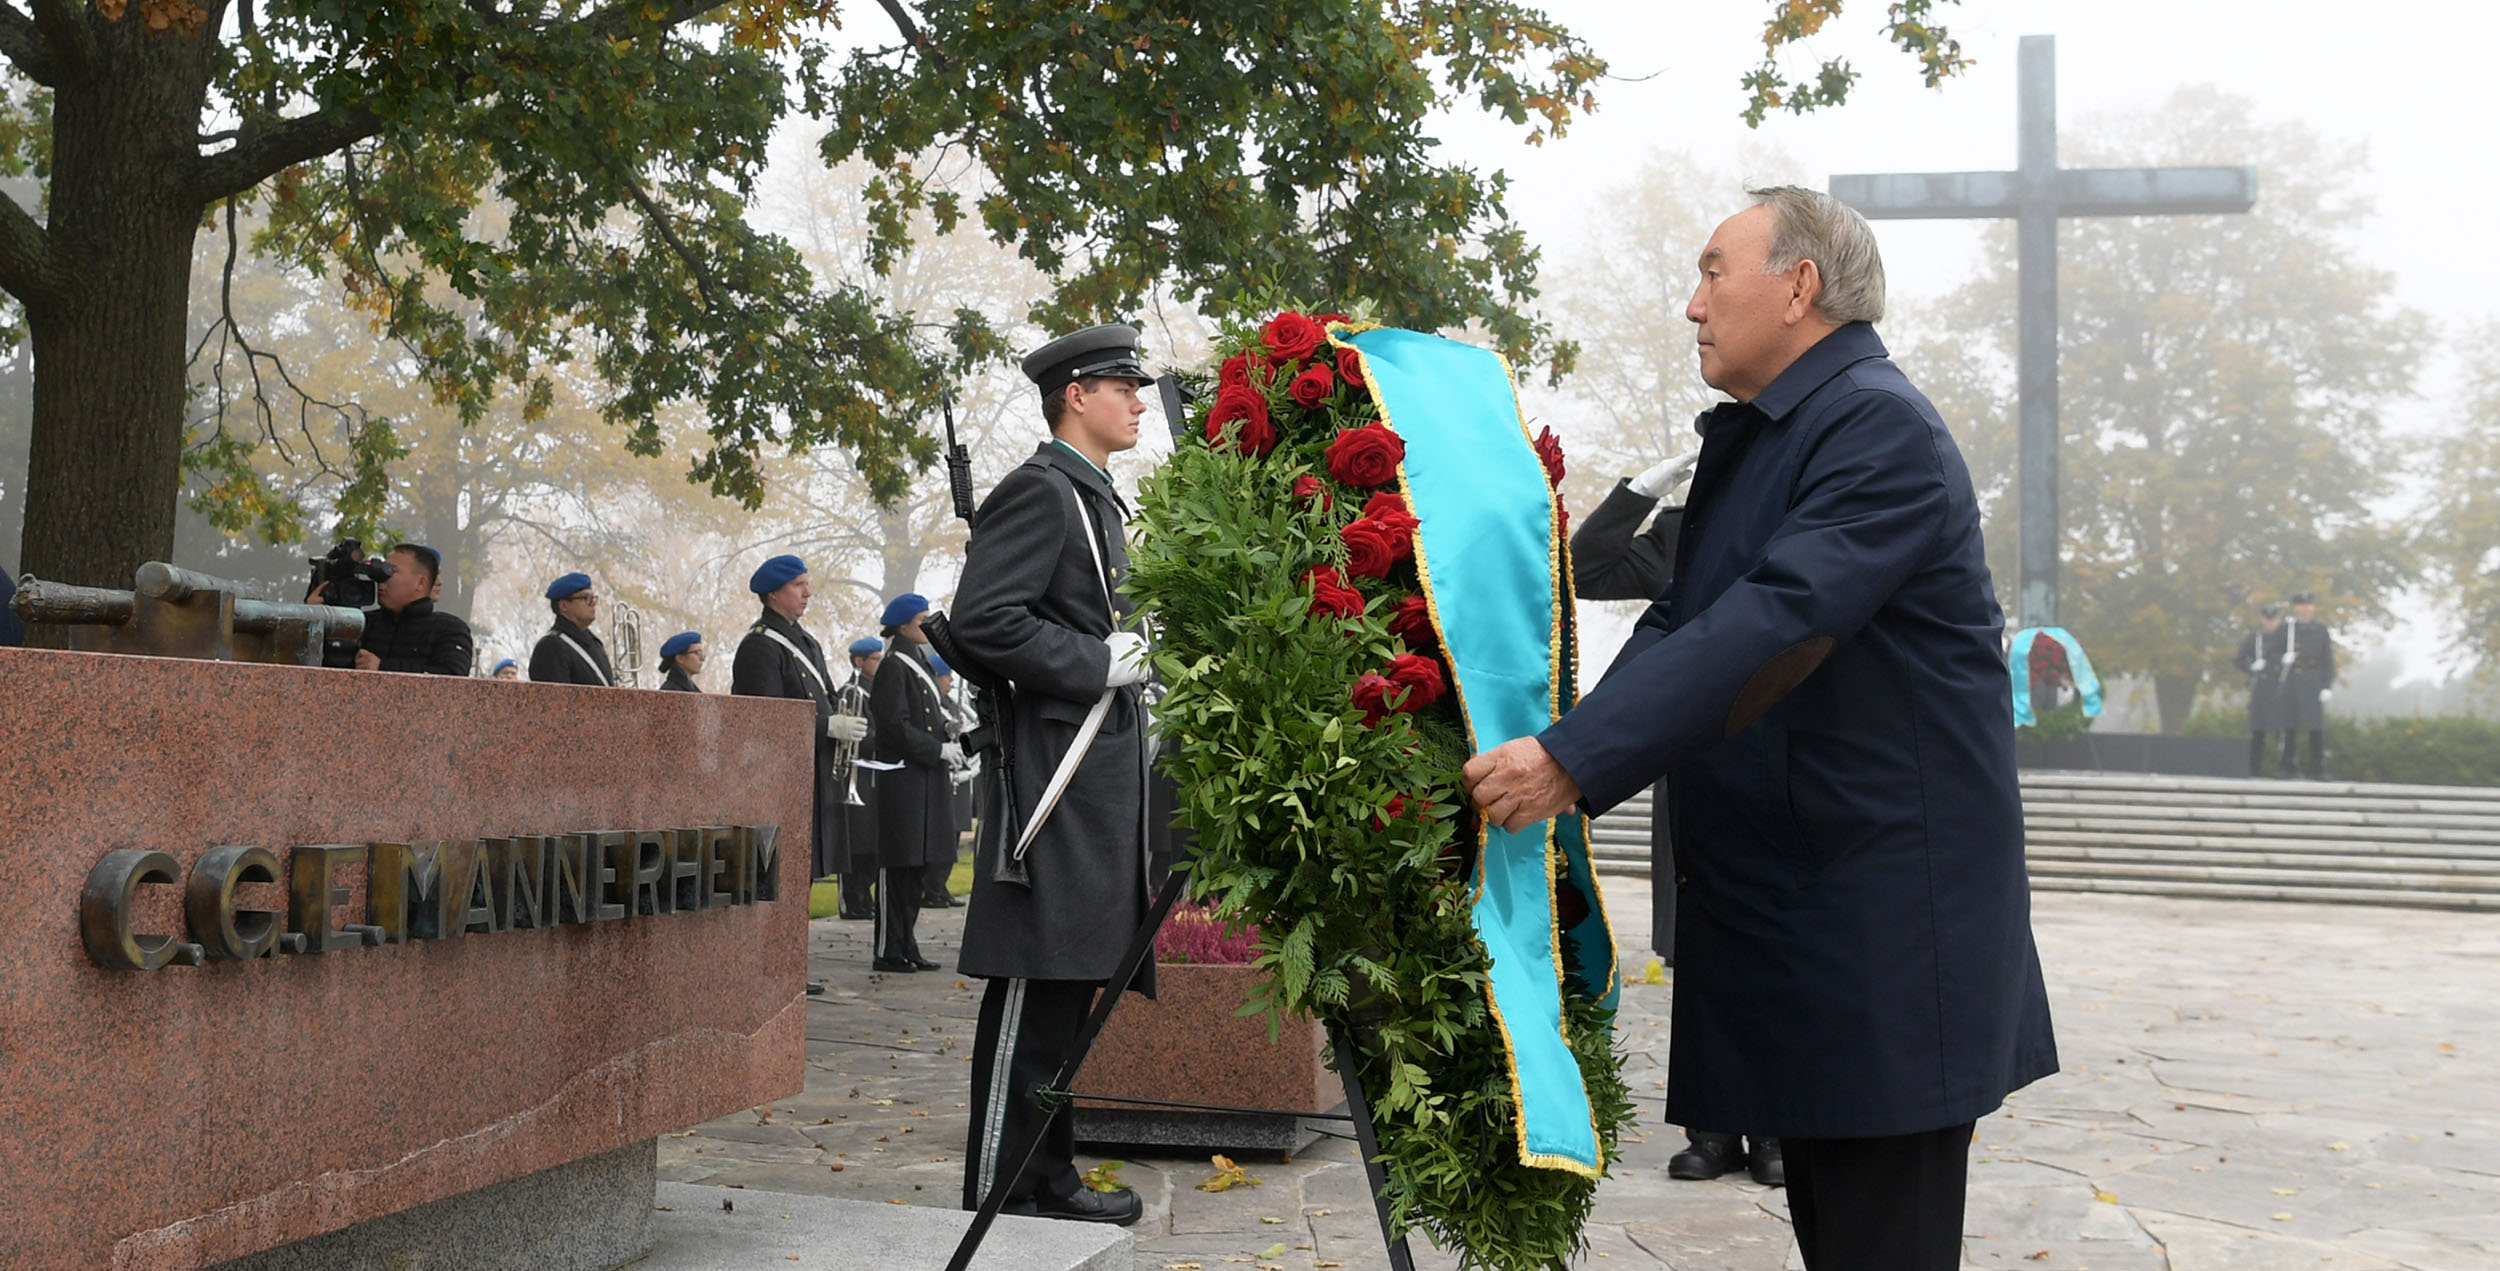 Нурсултан Назарбаев возложил цветы к могиле Карла Маннергейма и памятнику "Крест героев" в Финляндии